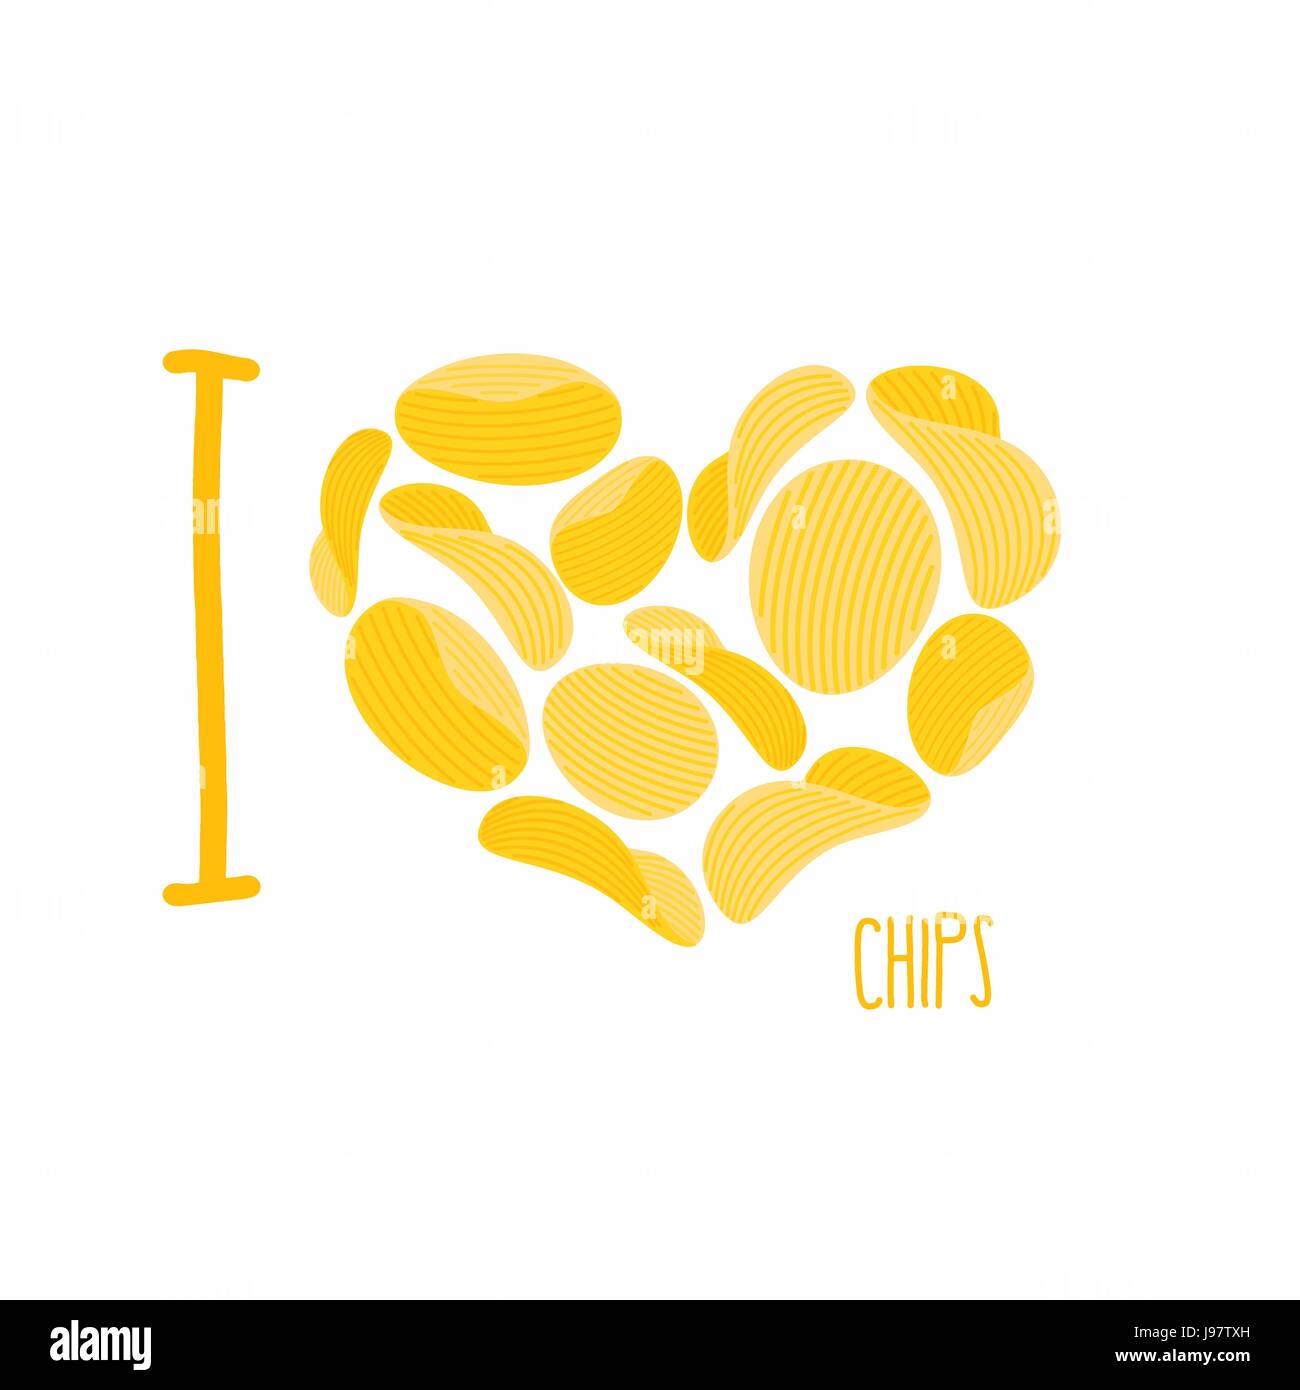 Ich liebe Chips. Symbol Herz von Kartoffel-Chips. Kartoffeln frittieren. Vektor-illustration Stock Vektor